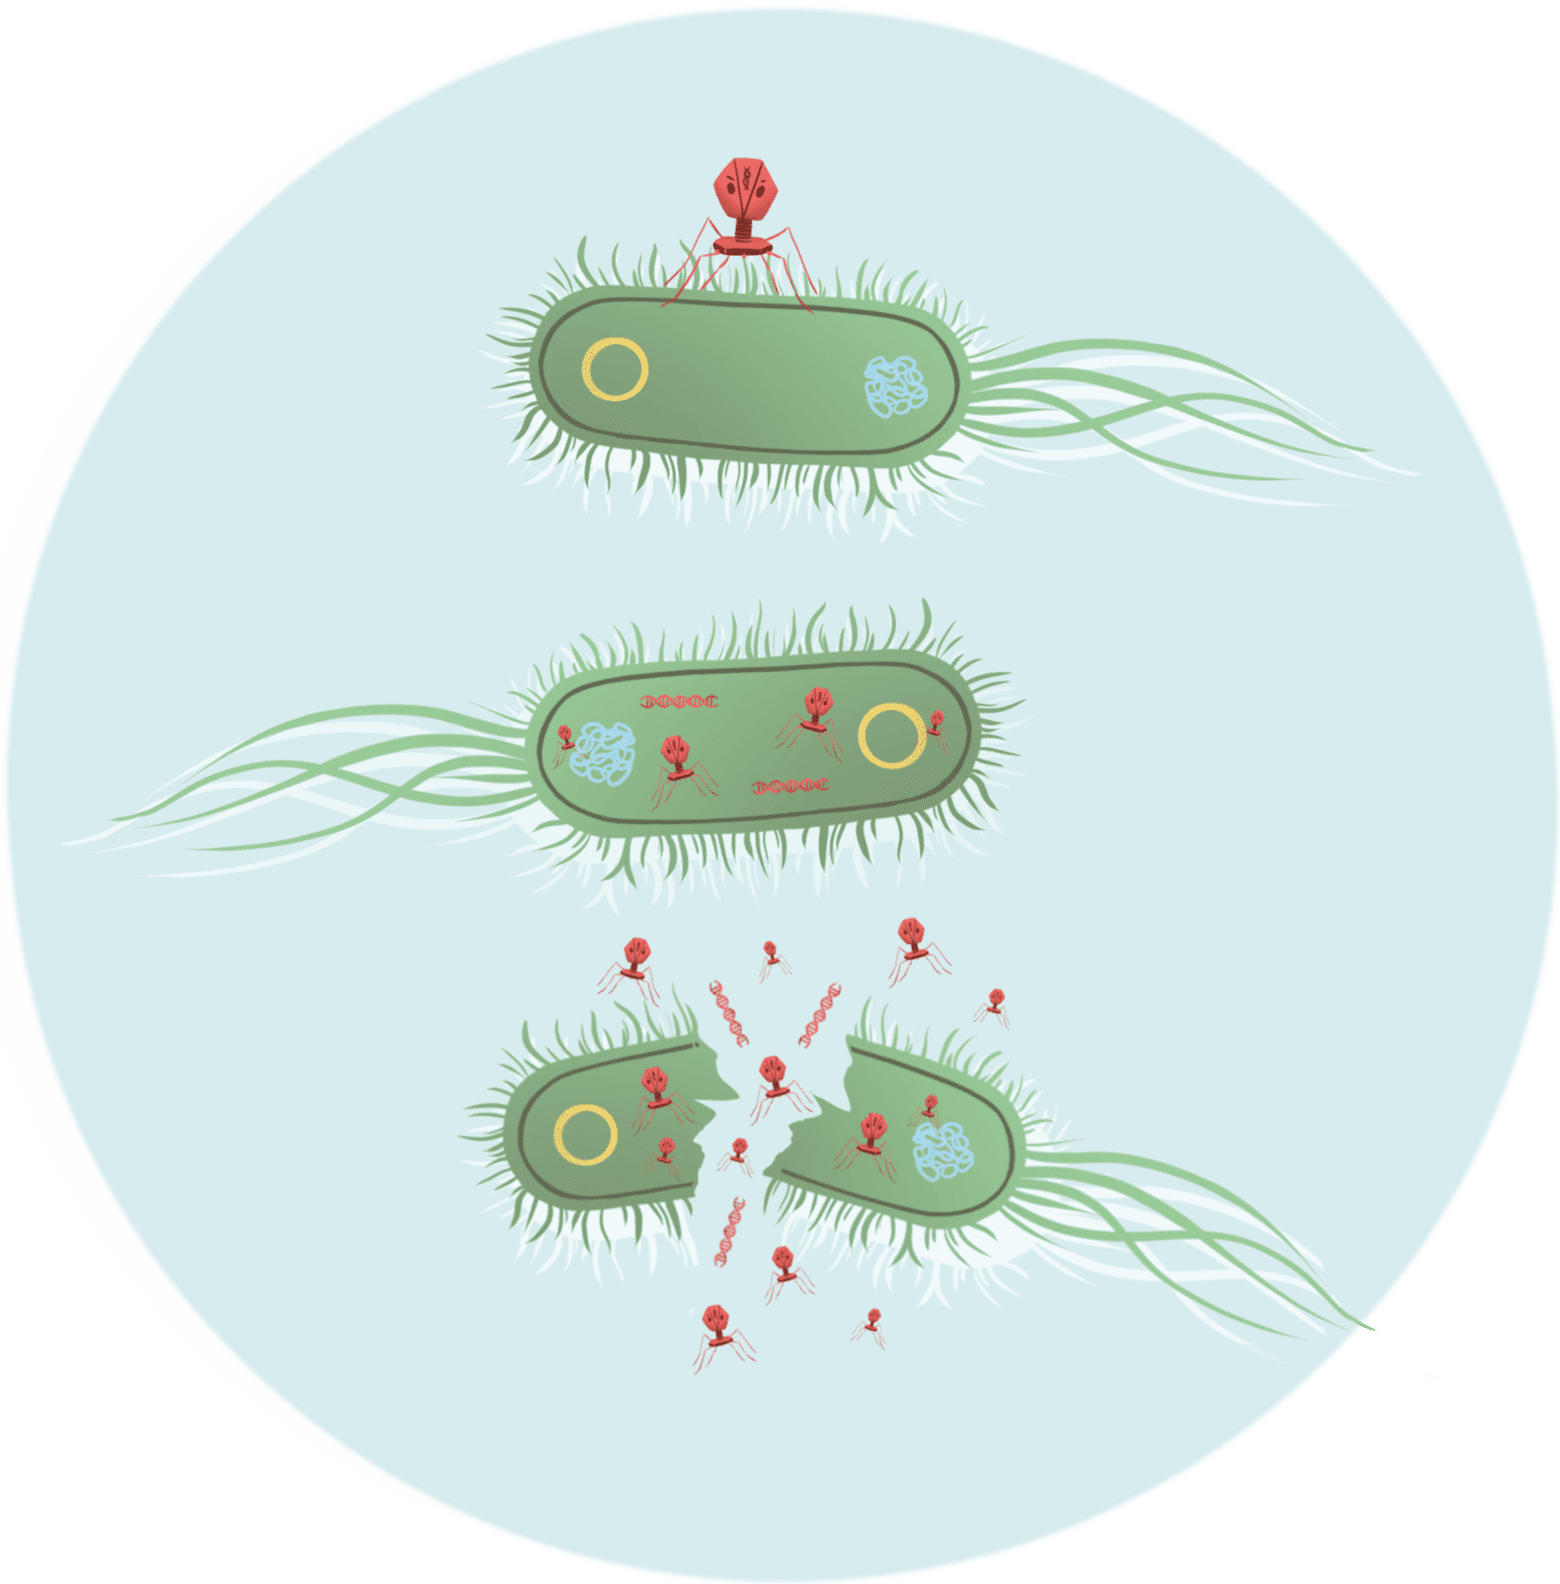 说明噬菌体将 DNA 注入大肠杆菌，在细菌细胞内繁殖，并最终裂解它，释放更多的噬菌体